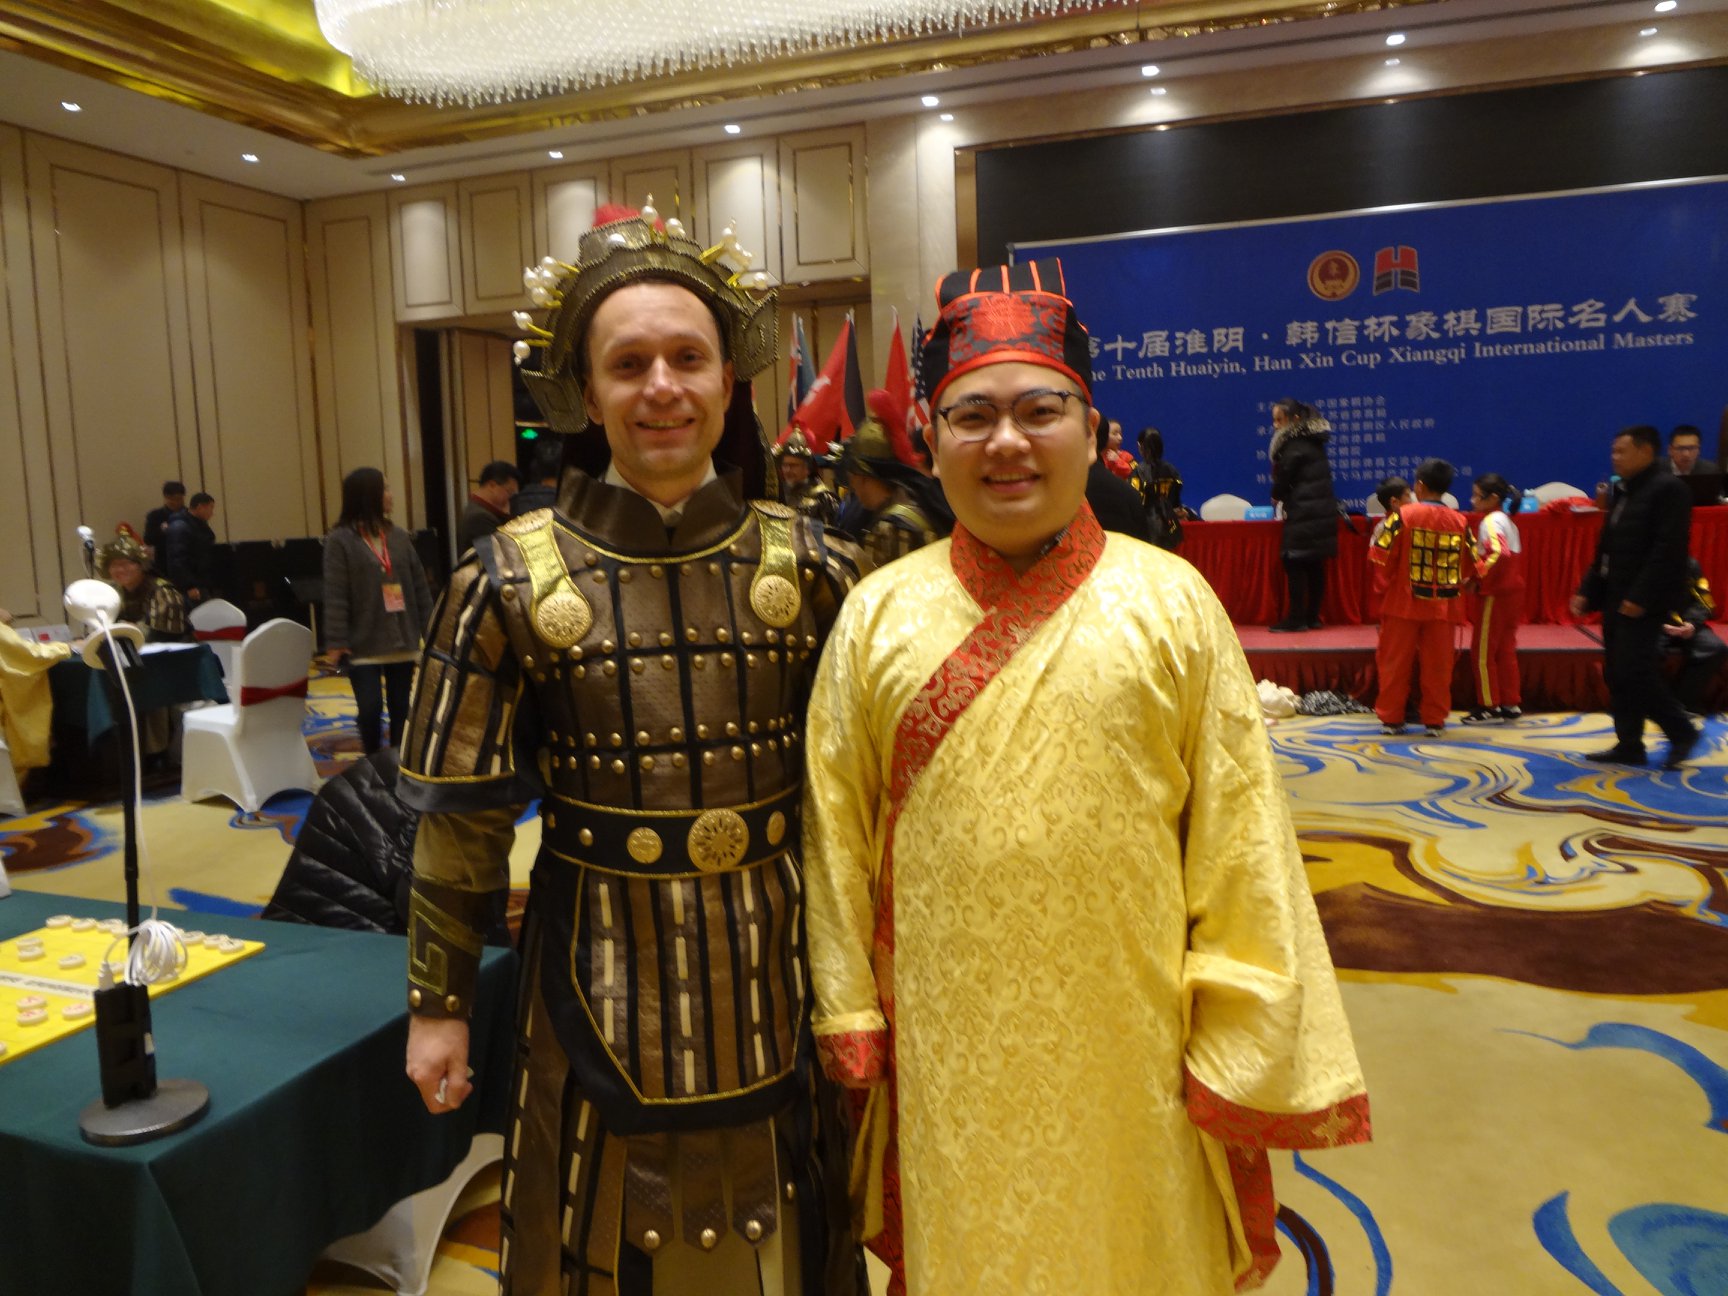 With GM Jiang Chuan